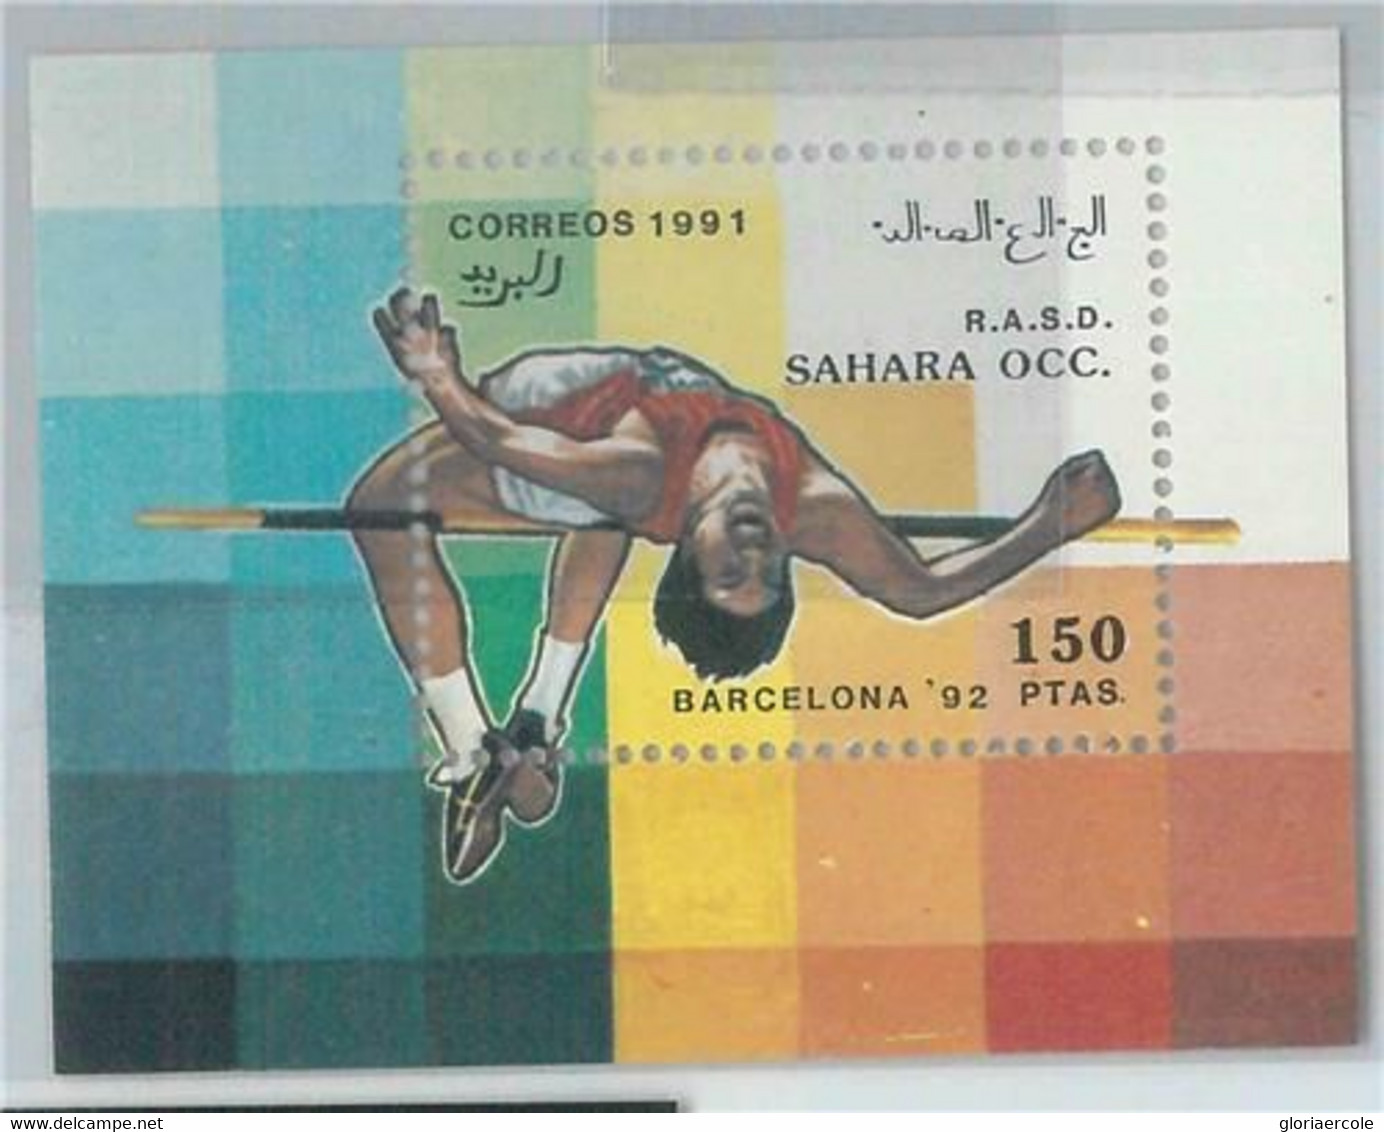 C0377 - Western SAHARA OCCIDENTAL - 1991  HIGH JUMP Barcelona 92  - Sheet  MNH - Salto